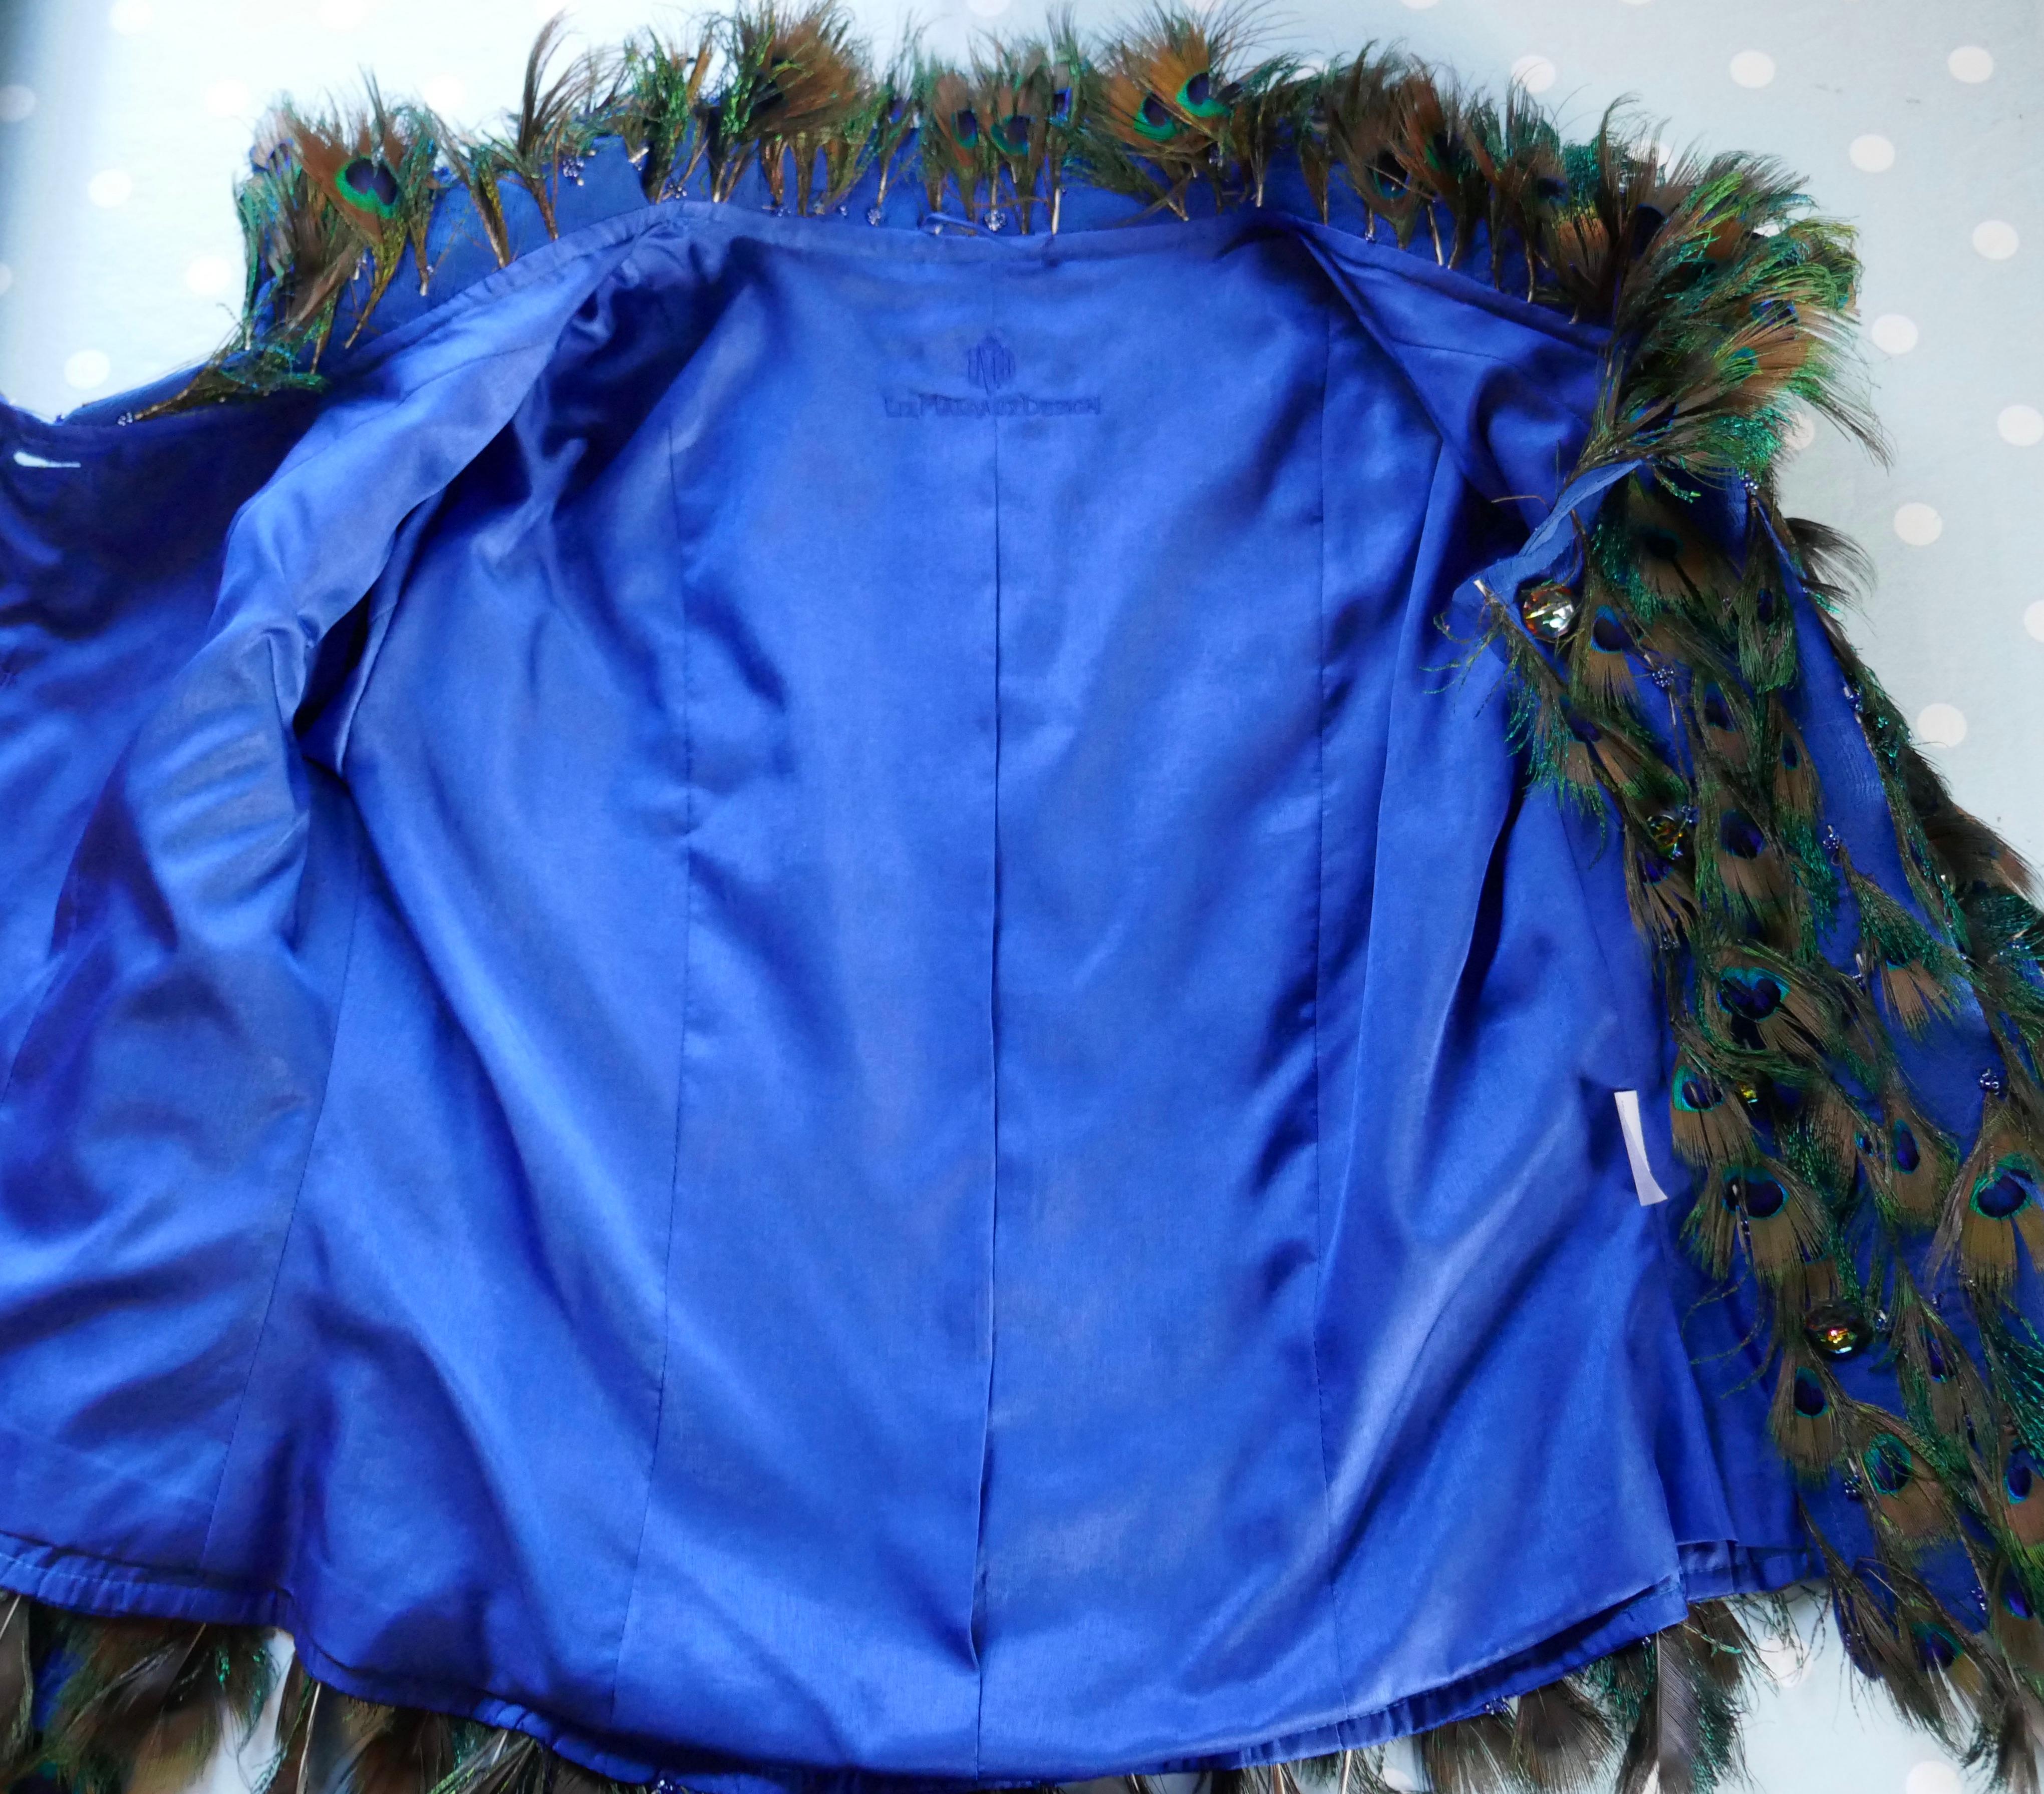 Veste de soirée unique en soie décorée de plumes par Liz Mairaux, 2008

Pièce exclusive conçue par Liz Mairaux Couture, la veste est doublée de soie et très légère, ce qui lui confère un petit supplément de chaleur pour une soirée d'été.

Liz